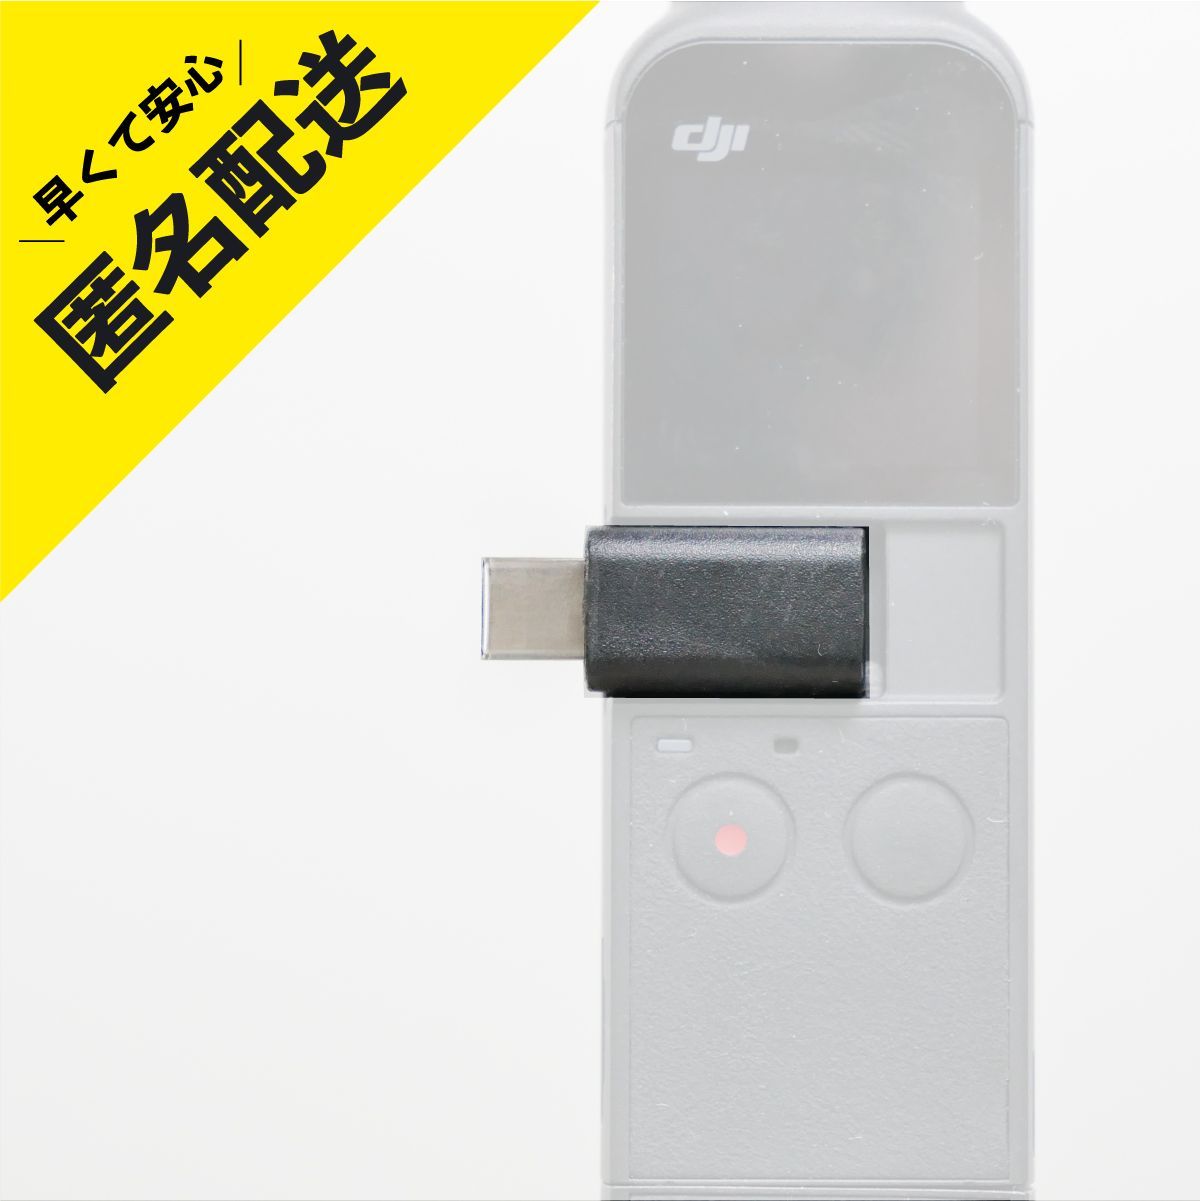 卓越 DJI Osmo Pocket 2 Lightning USB スマホ アダプタ gpstiger.com